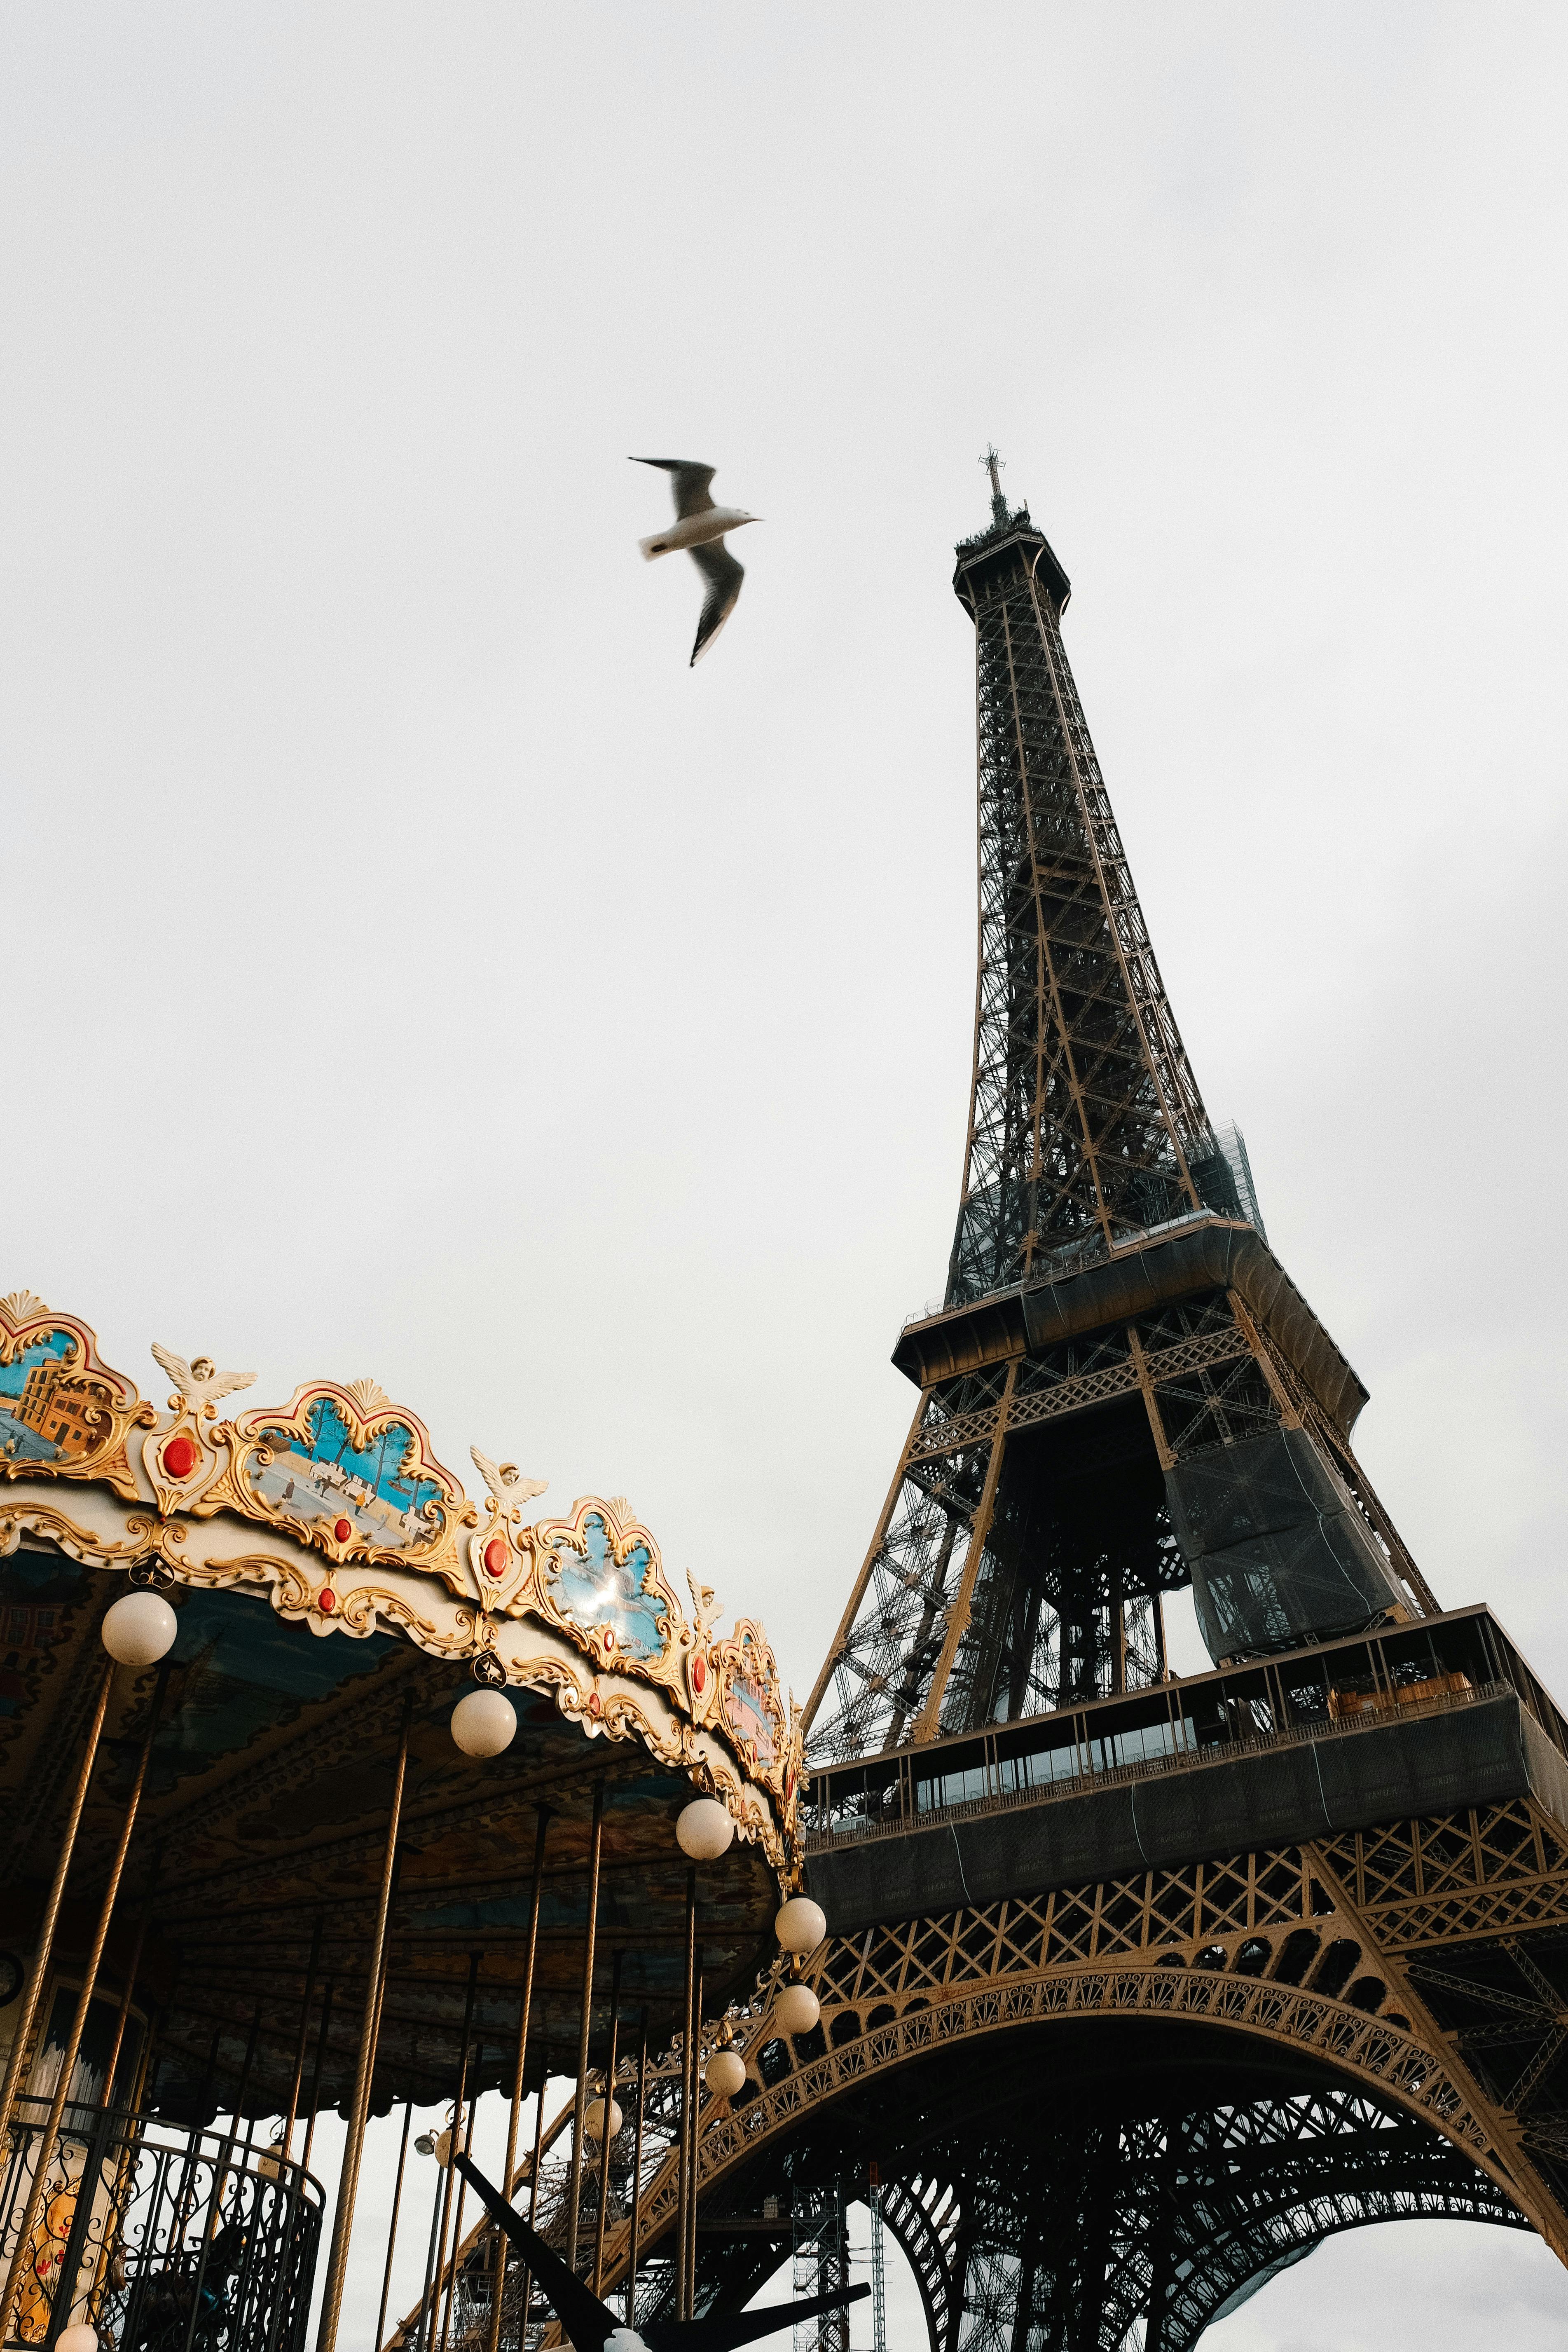 Hãy trang trí điện thoại của bạn bằng hình nền tháp Eiffel đầy cảm hứng. Hình ảnh sẽ mang lại cho bạn một cảm giác trọn vẹn về sự nghiêng nước nghiêng thành của kiệt tác kiến trúc này. Bạn còn chờ gì mà không tải ngay hình nền này về điện thoại của mình?